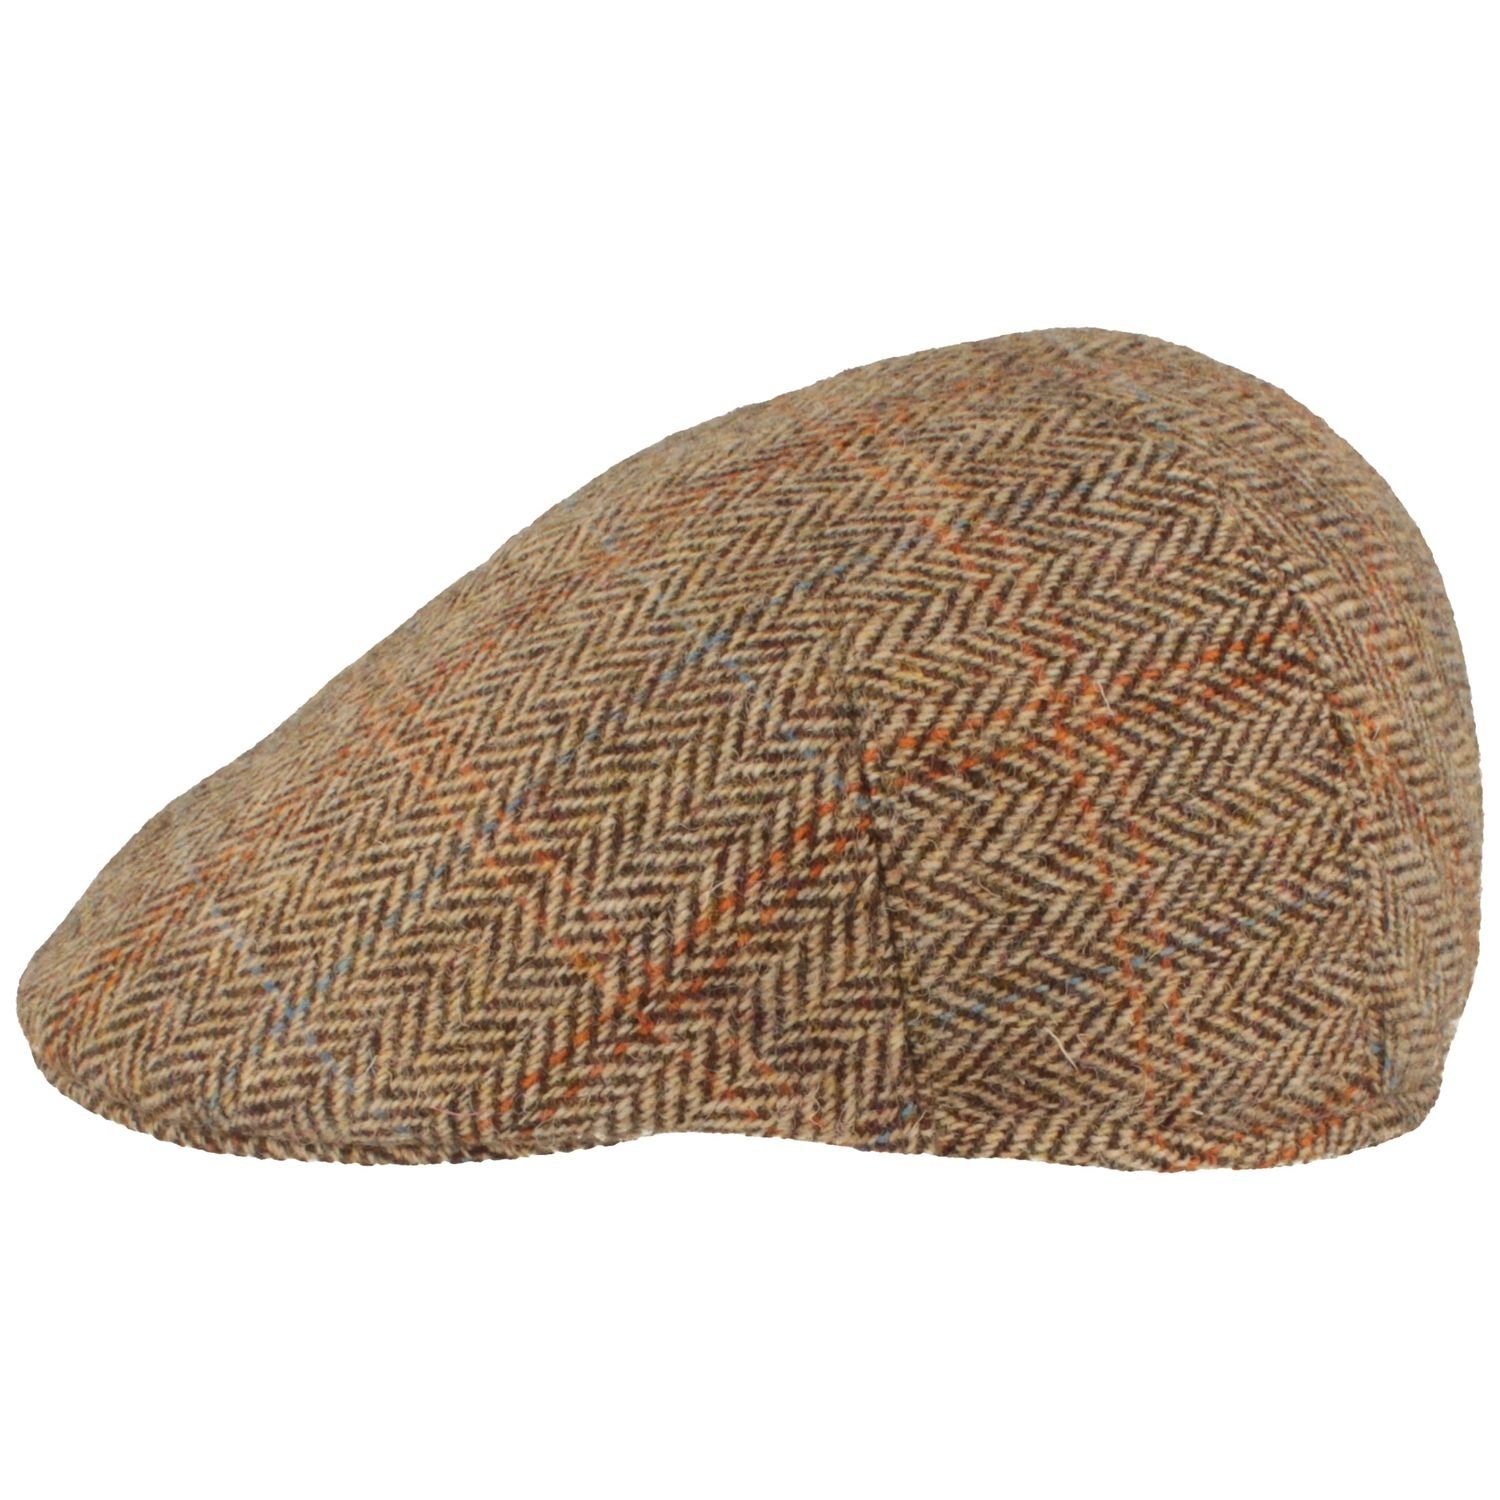 Breiter Schiebermütze Harris-Tweed knautschbare Flatcap Schirmmütze / Hut-Breiter beige